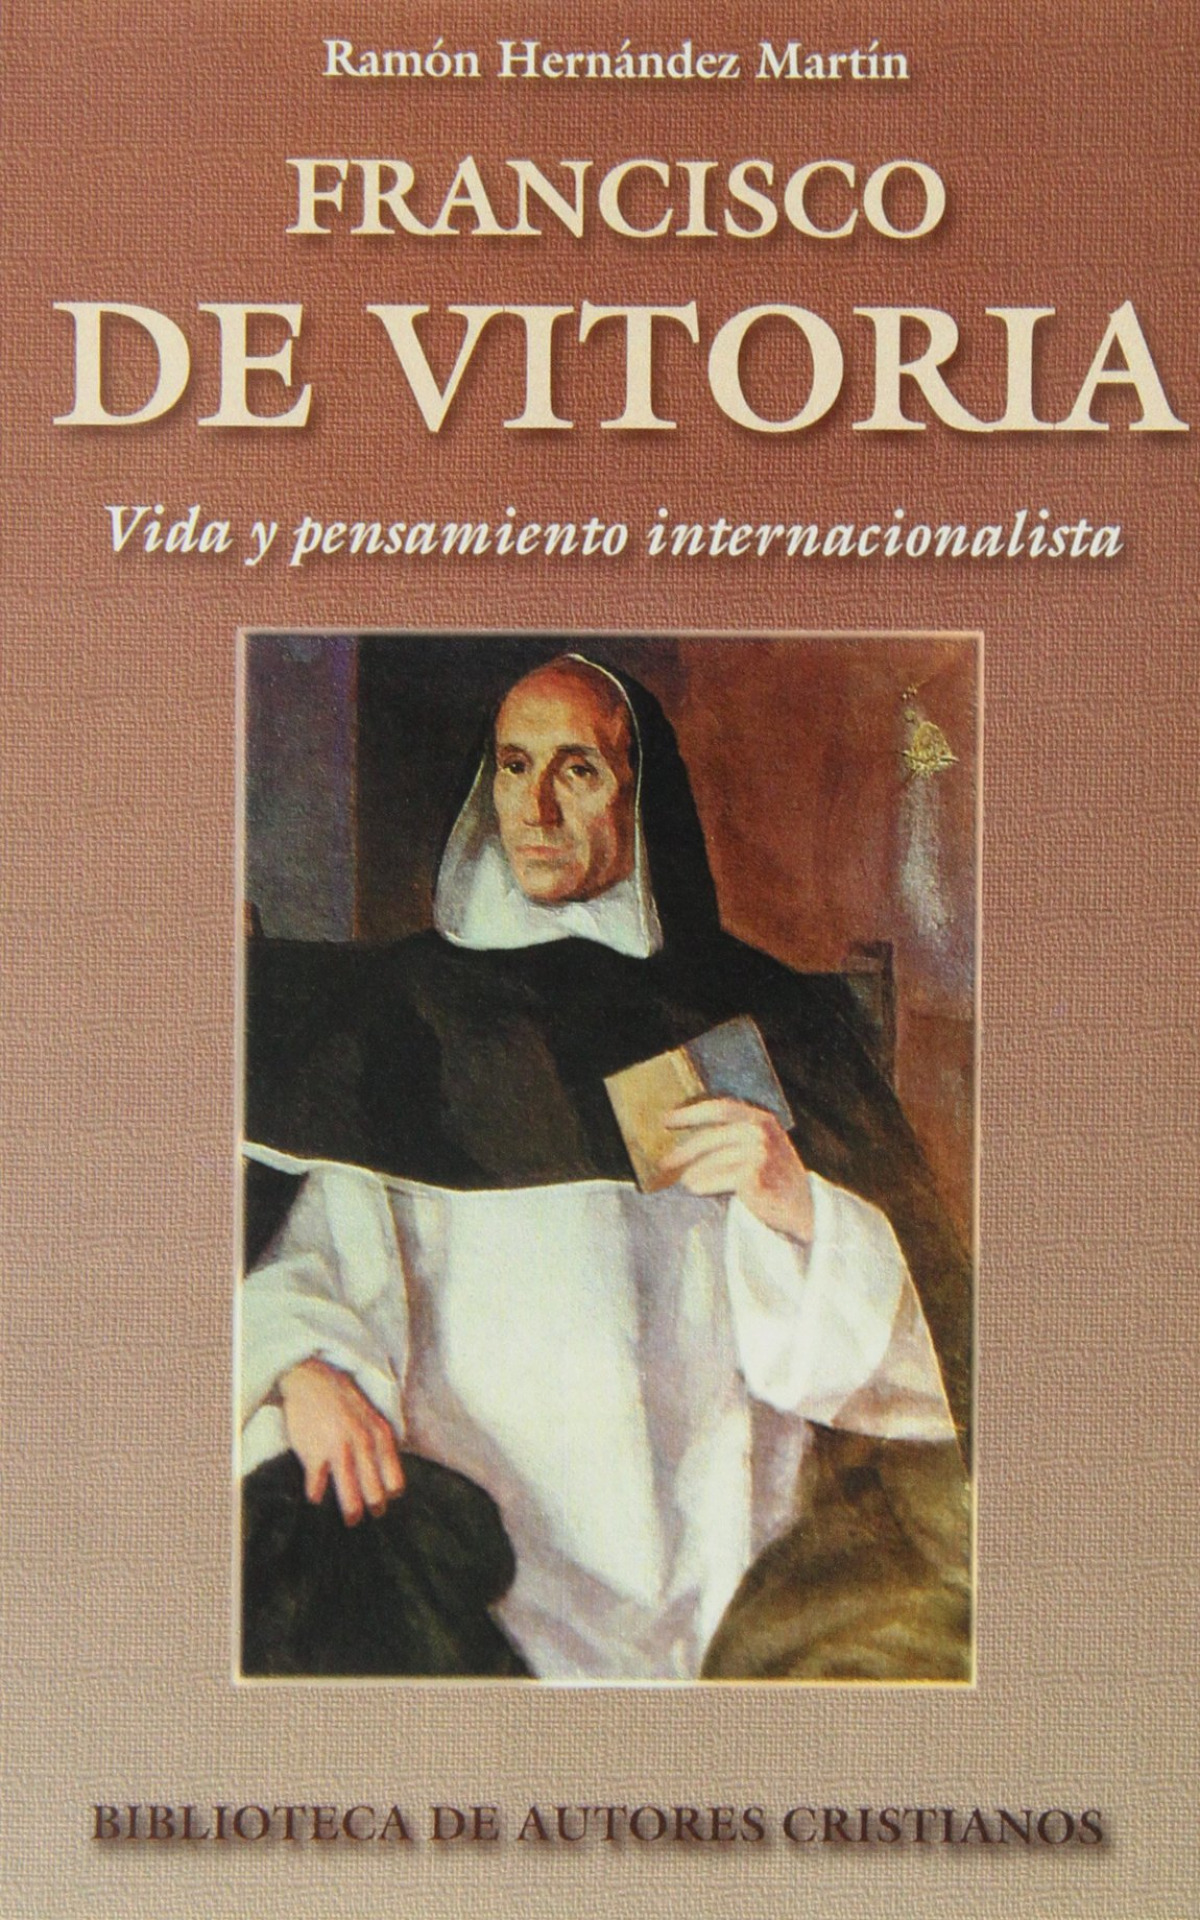 Francisco de vitoria. vida y pensamiento internacionalista. - Hernández Martín, Ramón